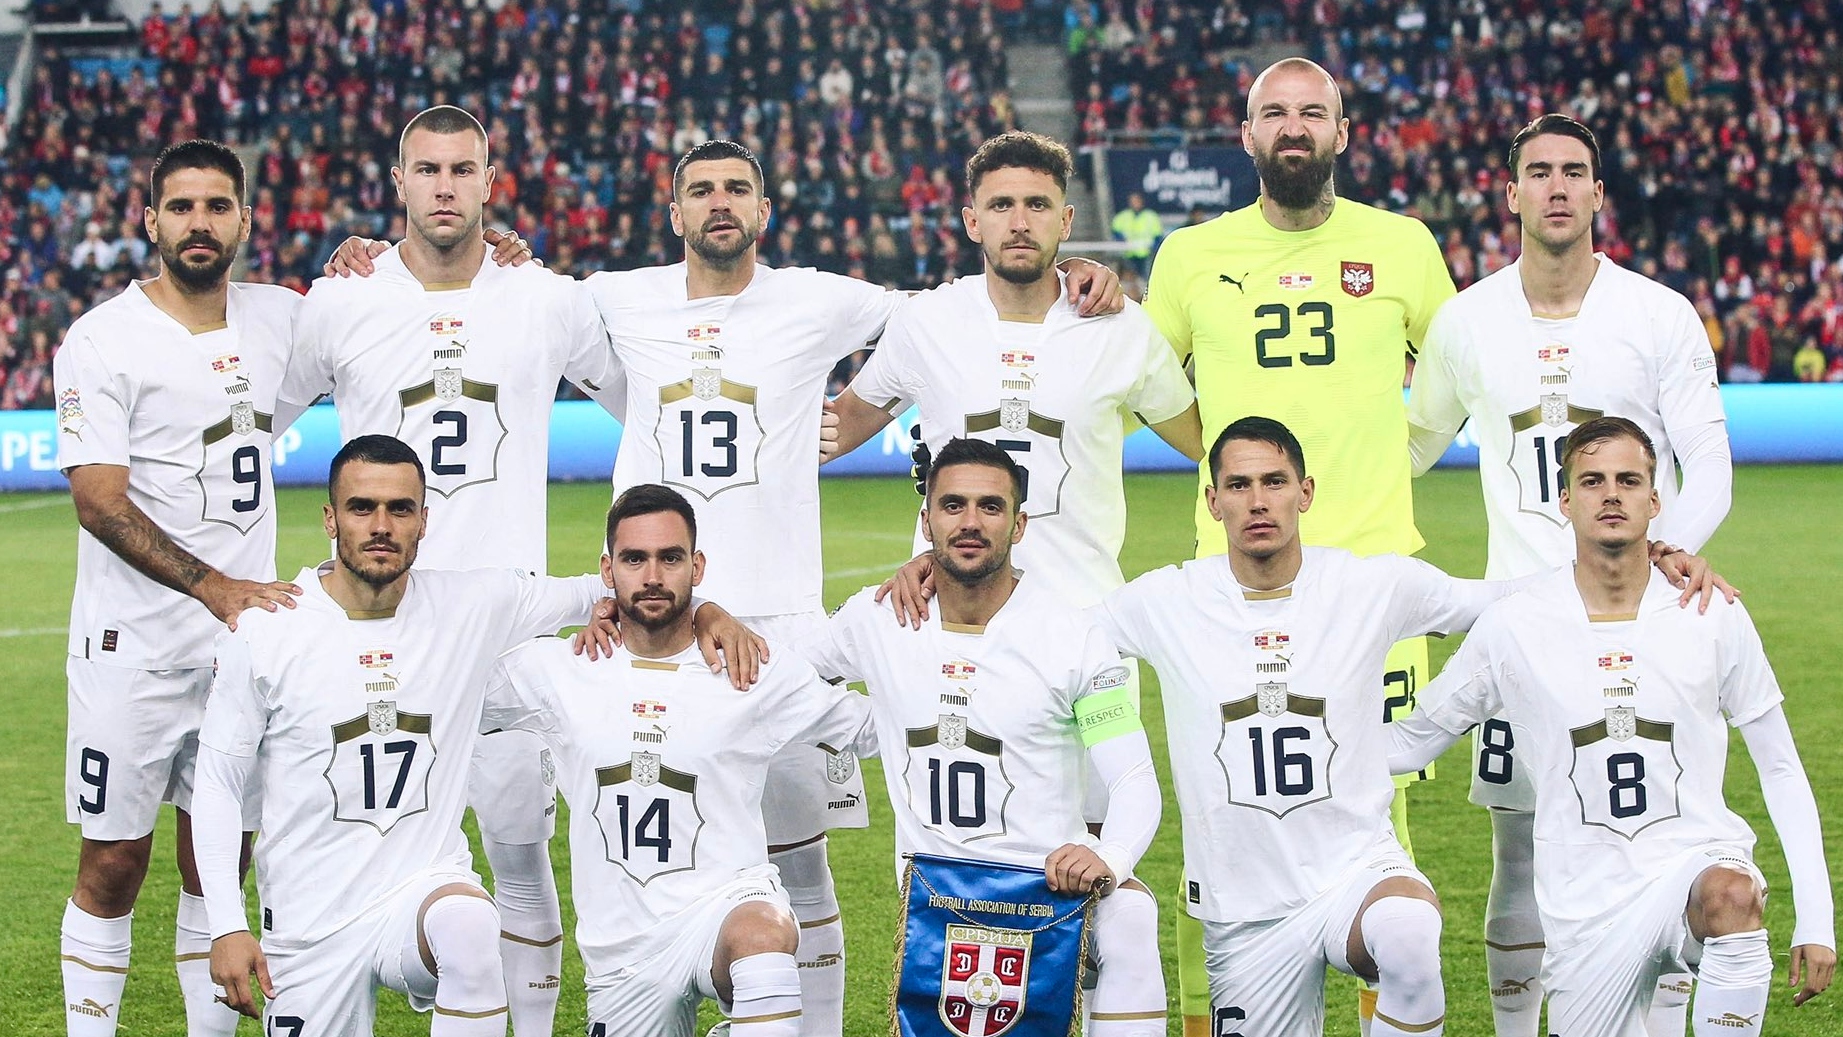 Mundial-2022: Brasil tem Sérvia pela frente no primeiro jogo, jogo online  brasil e servia 